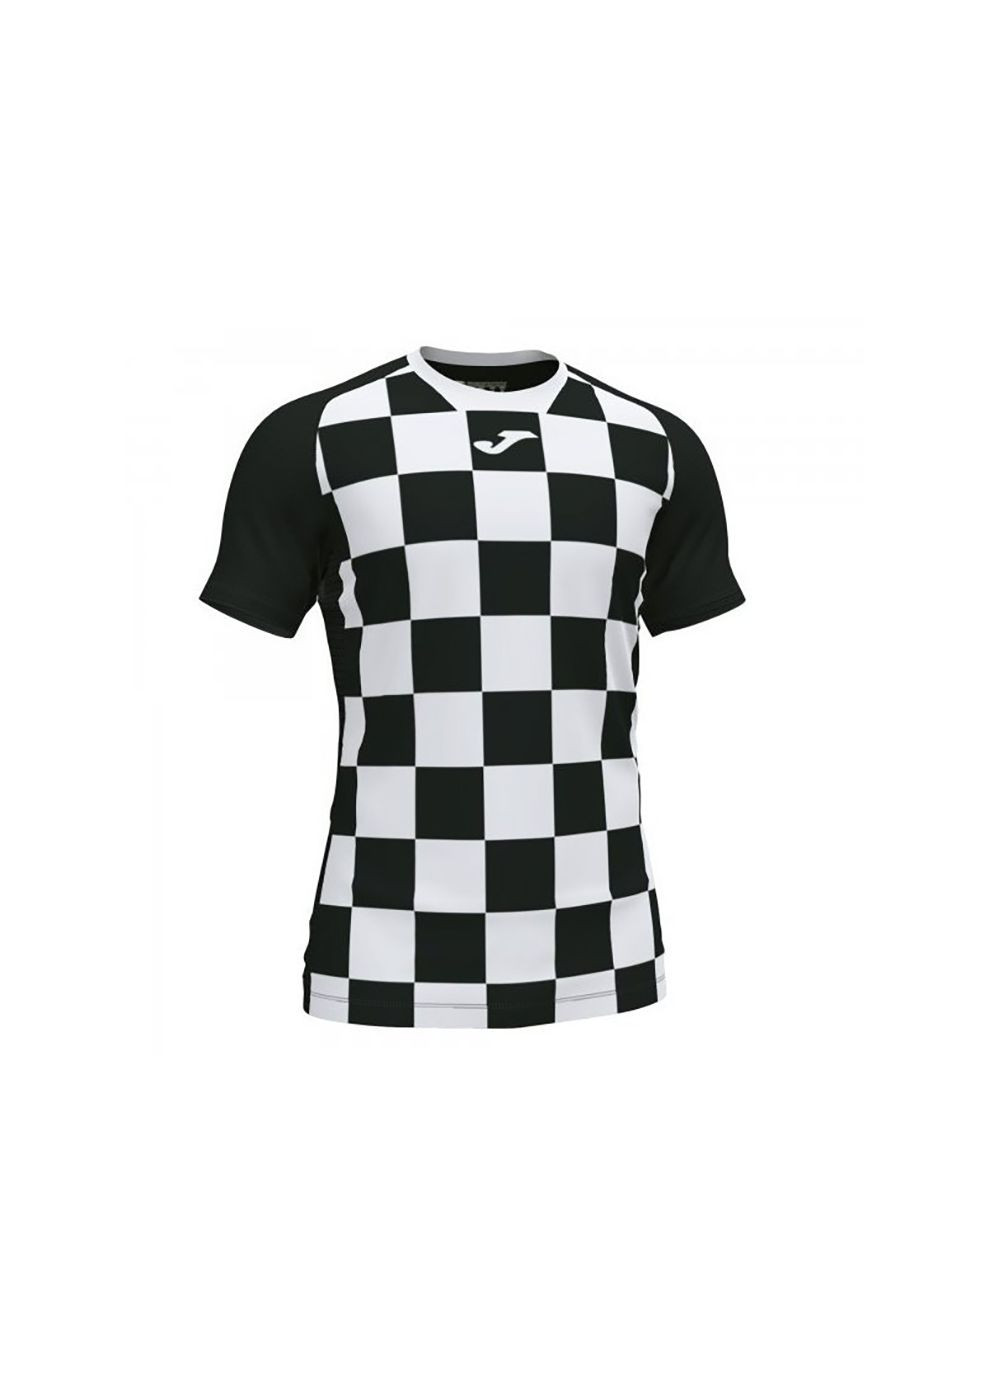 Комбінована футболка flag ii t-shirt black-white s/s чорний,білий 101465bv.102 Joma